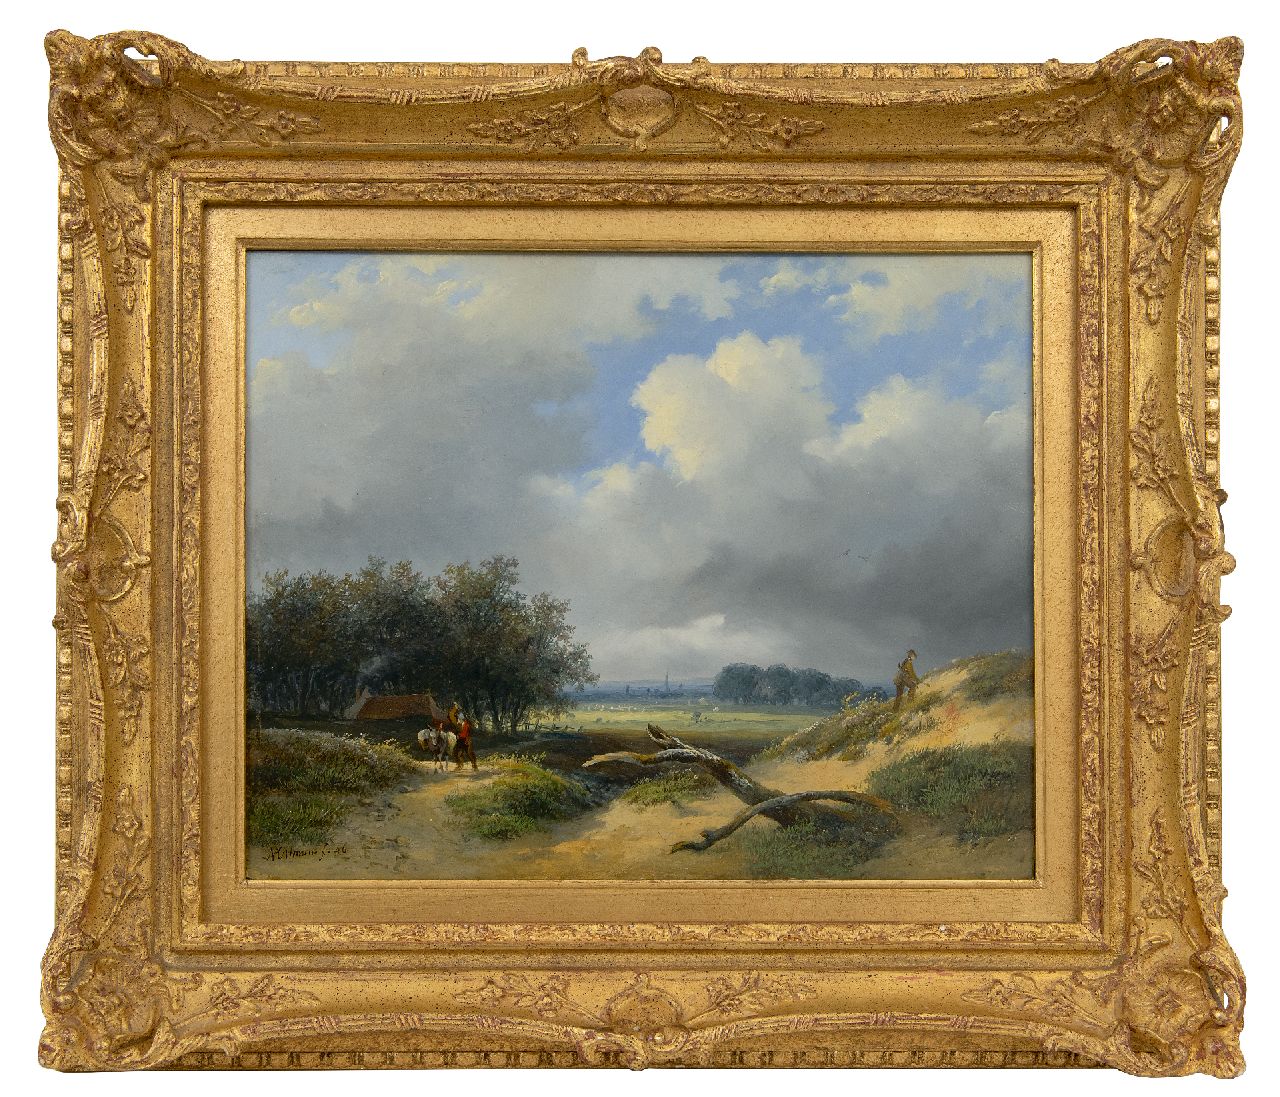 Ortmans F.A.  | François Auguste Ortmans | Schilderijen te koop aangeboden | Valleilandschap met jager en boer, olieverf op paneel 23,4 x 29,4 cm, gesigneerd linksonder en gedateerd '46